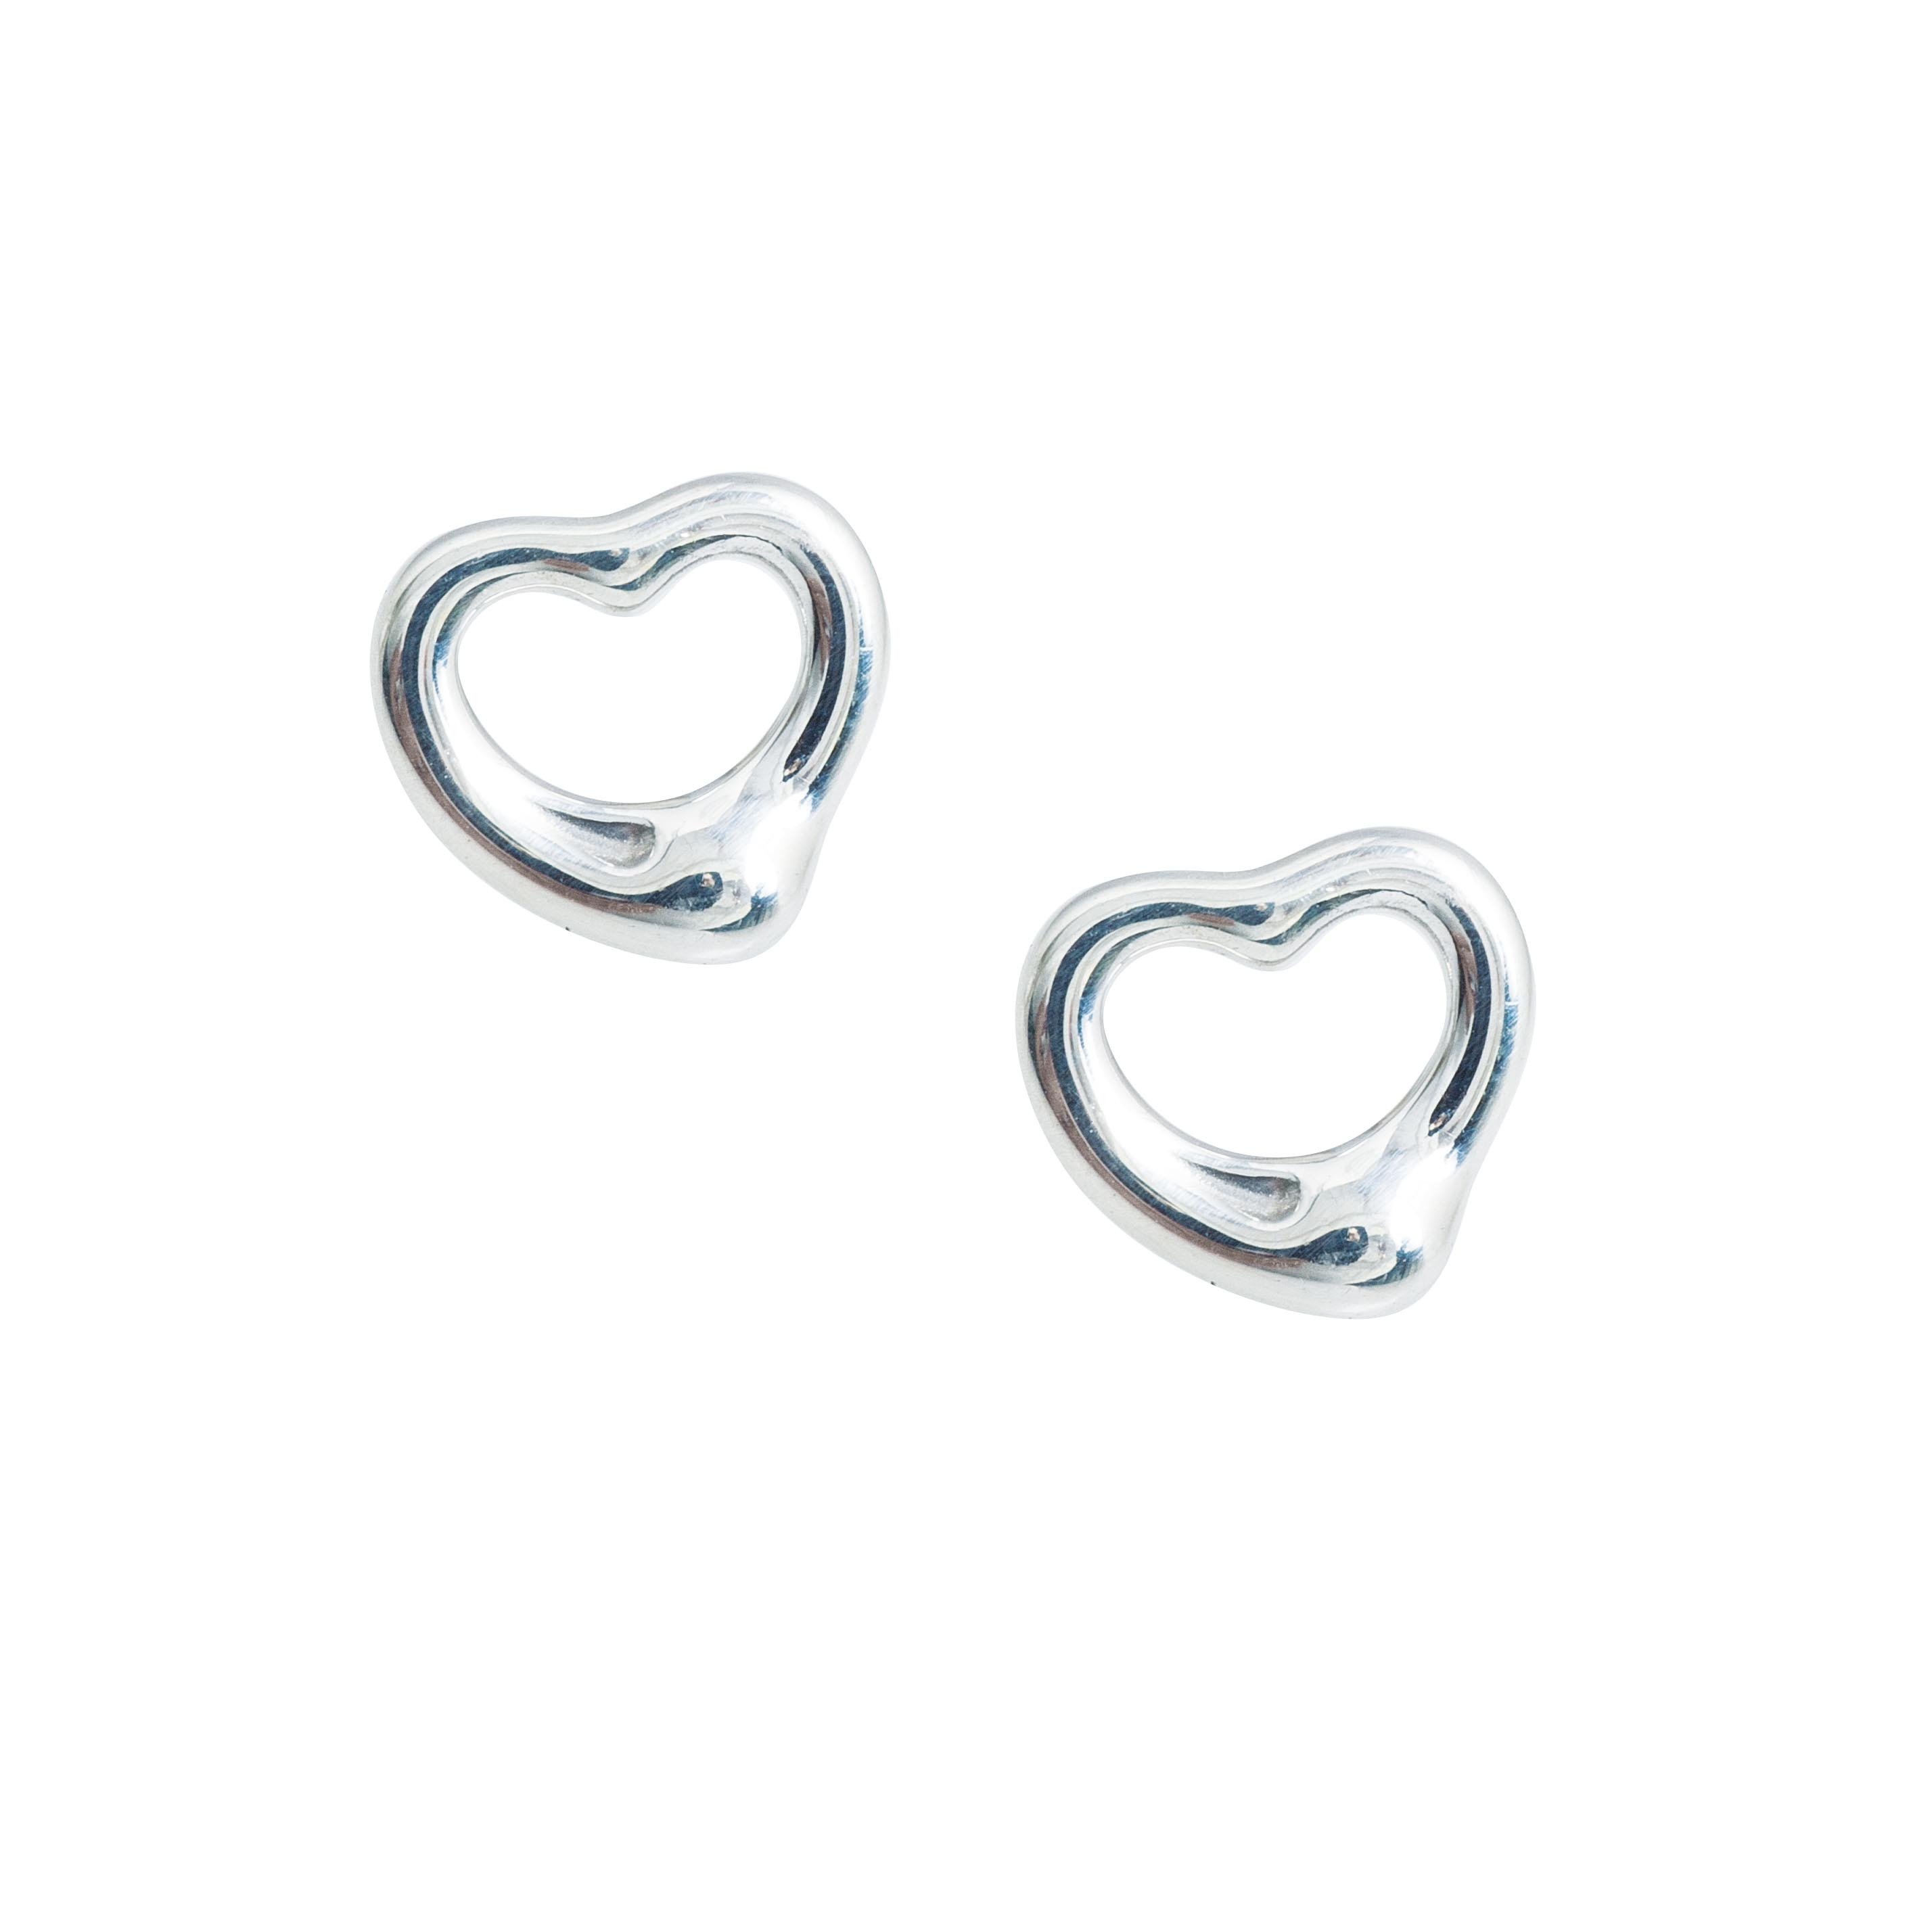 tiffany and co open heart earrings